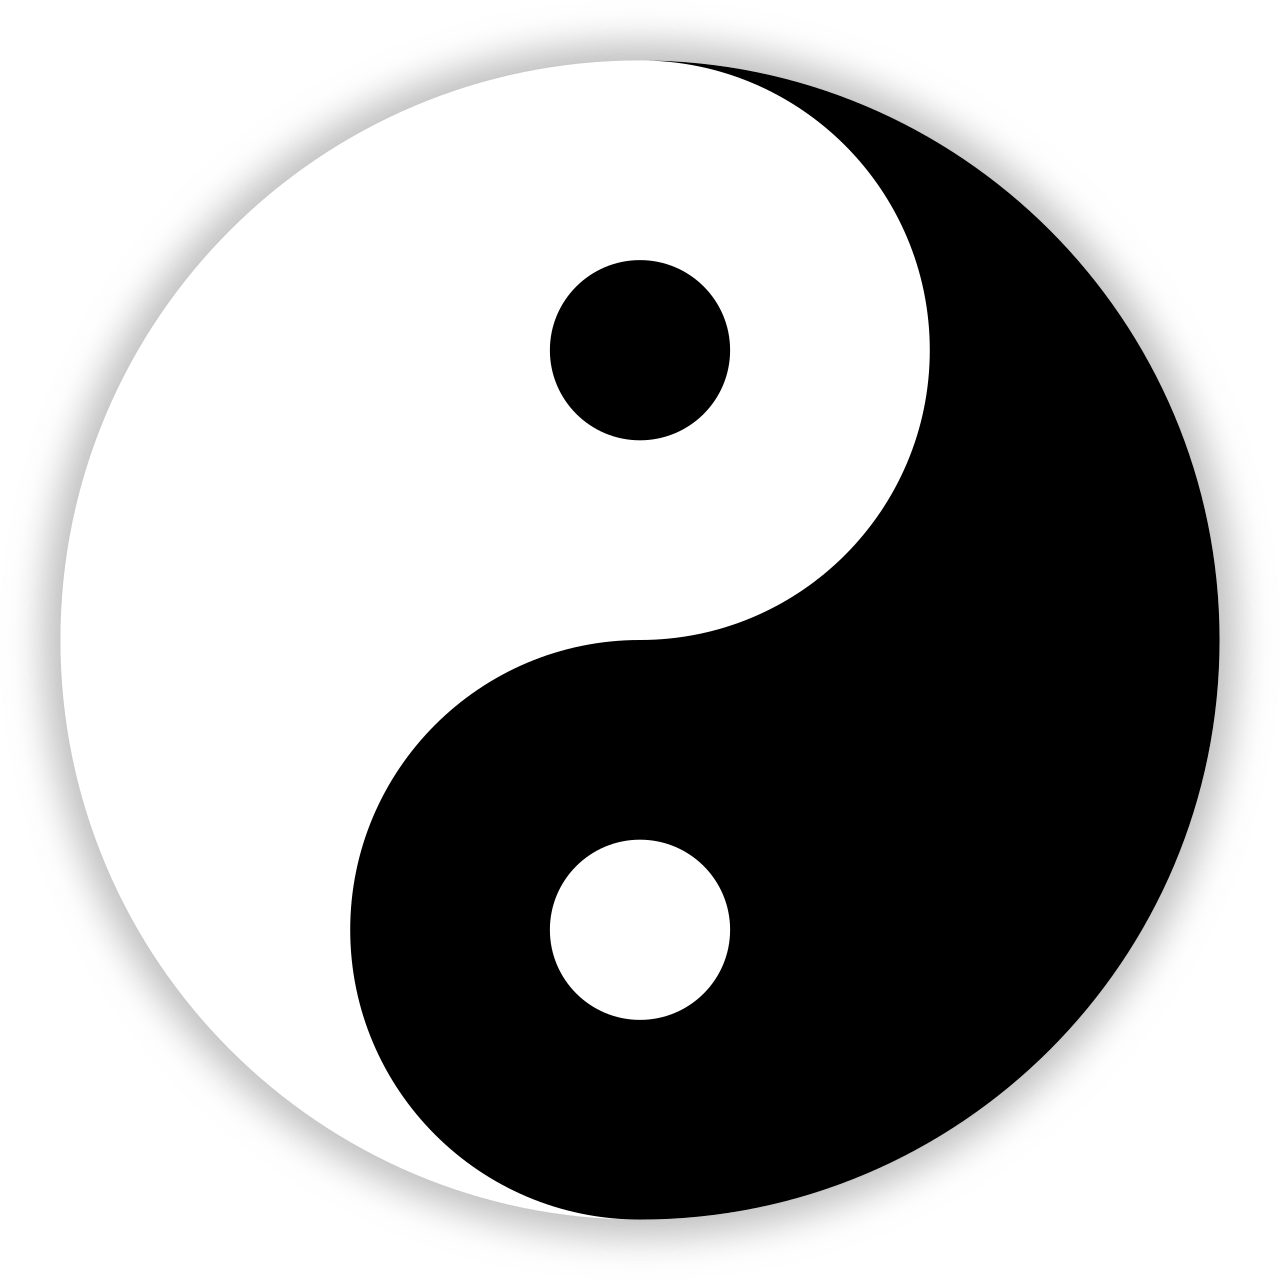 Yin and Yang symbol.svg